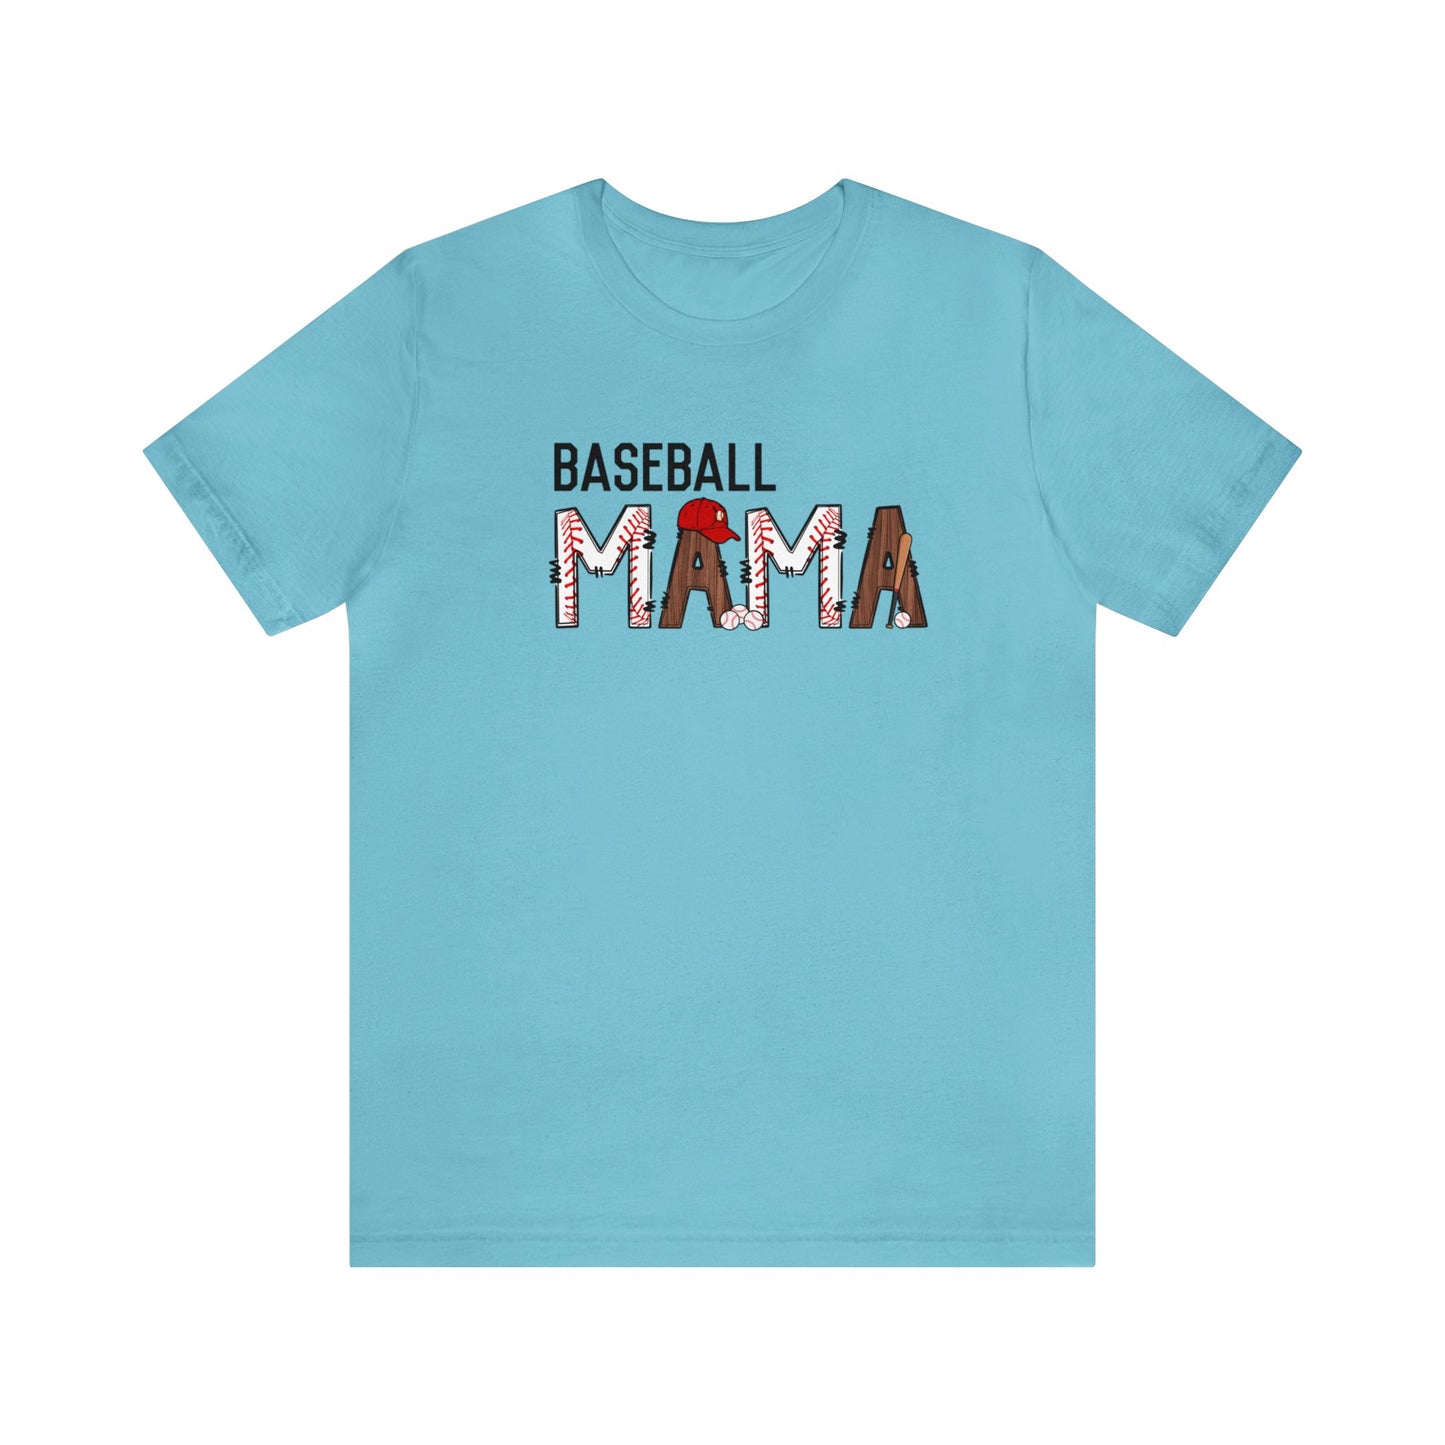 Baseball Mama - Short Sleeve Tee